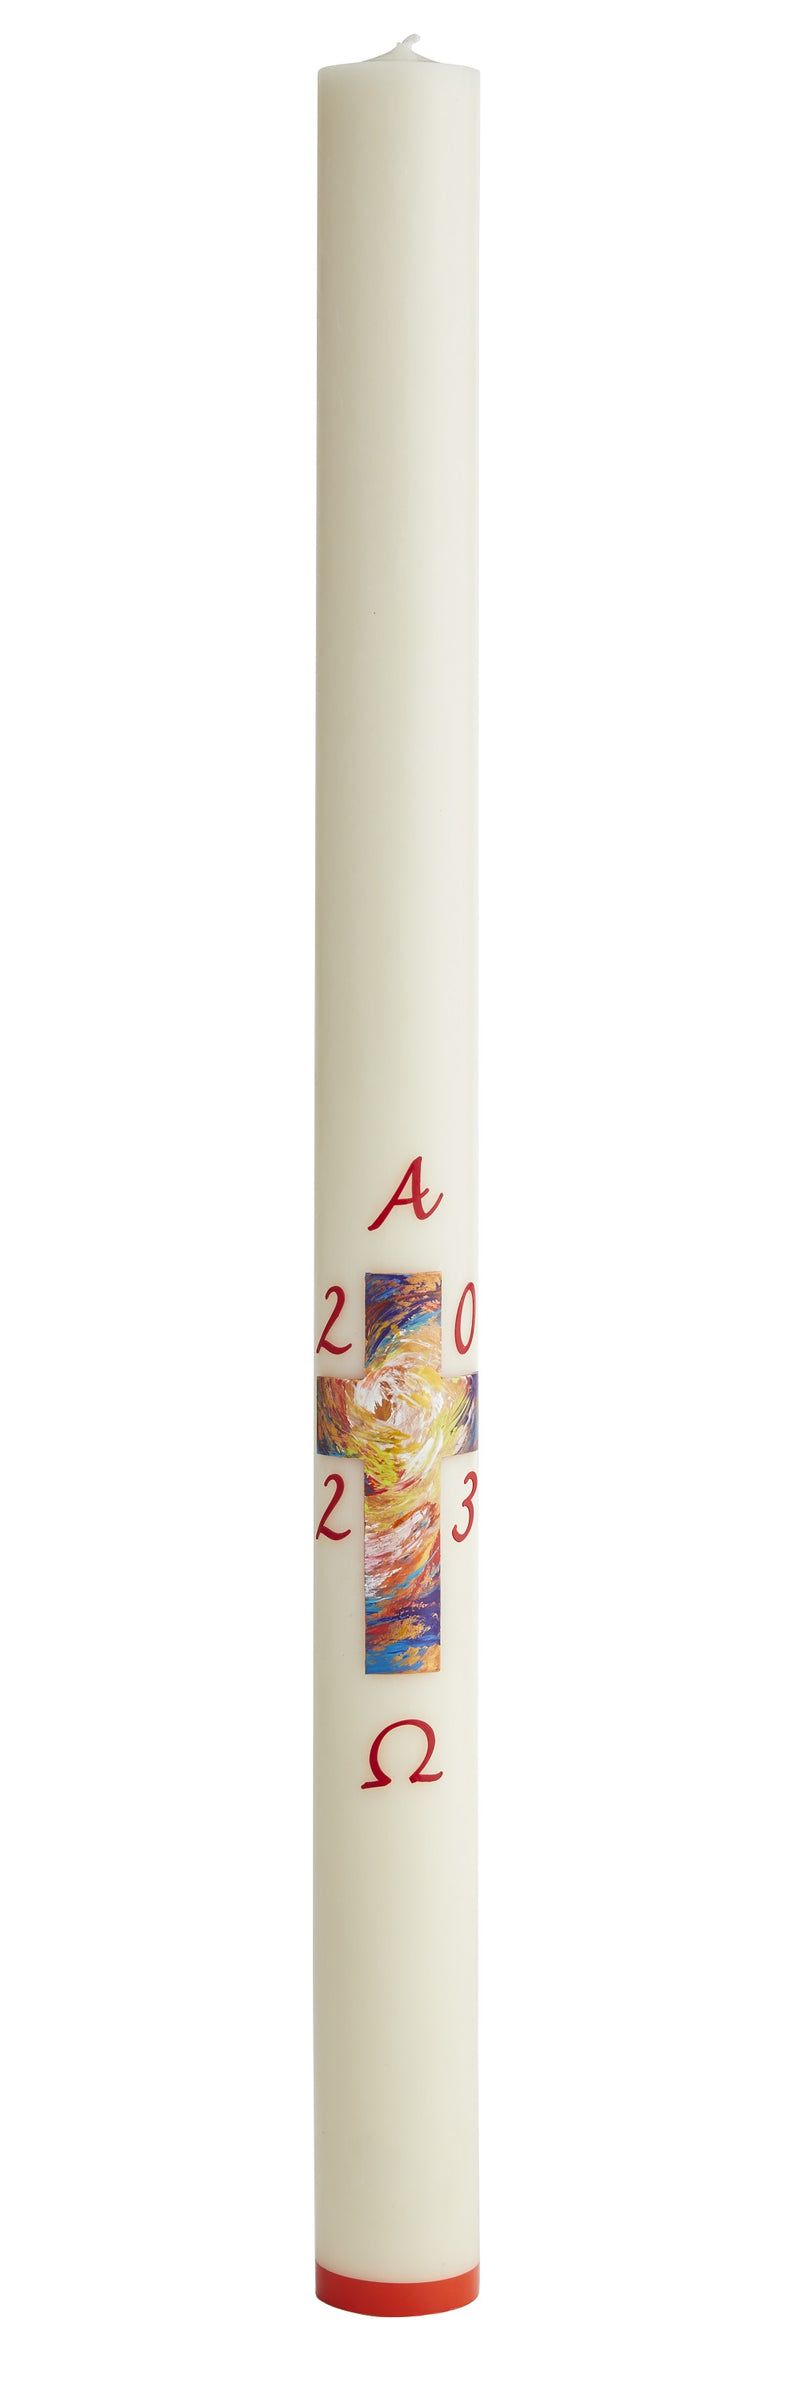 Cierge Pascal avec décoration "Croix Matin de Pâques". Disponible en différentes hauteurs (80 cm / 100 cm / 120 cm), diamètres (8 cm / 9 cm) et qualité de cire (classique et 30% cire d'abeille). Ciergerie Desfossés